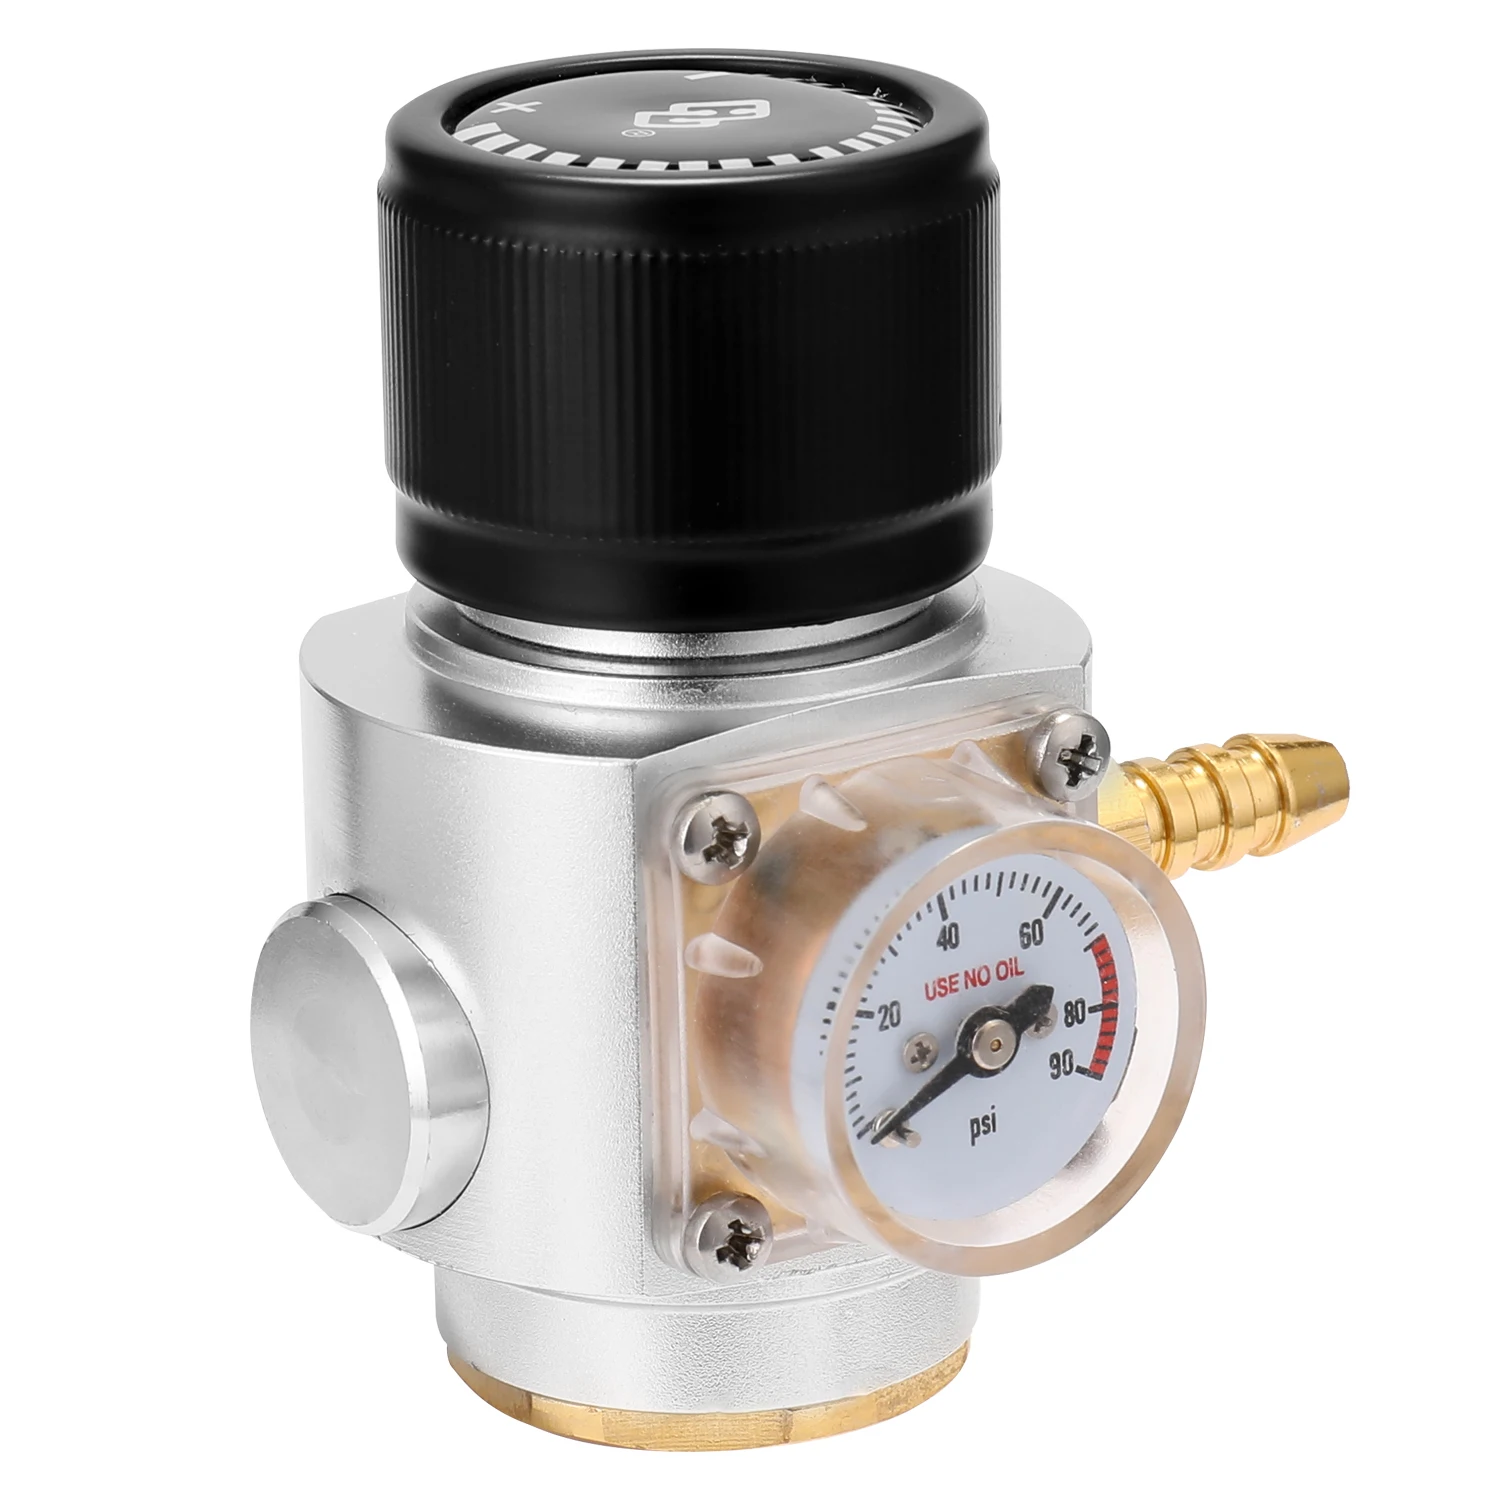 Sodastream CO2 мини газовое зарядное устройство 0-90 фунтов/кв. дюйм датчик для содовой воды пива Kegerator